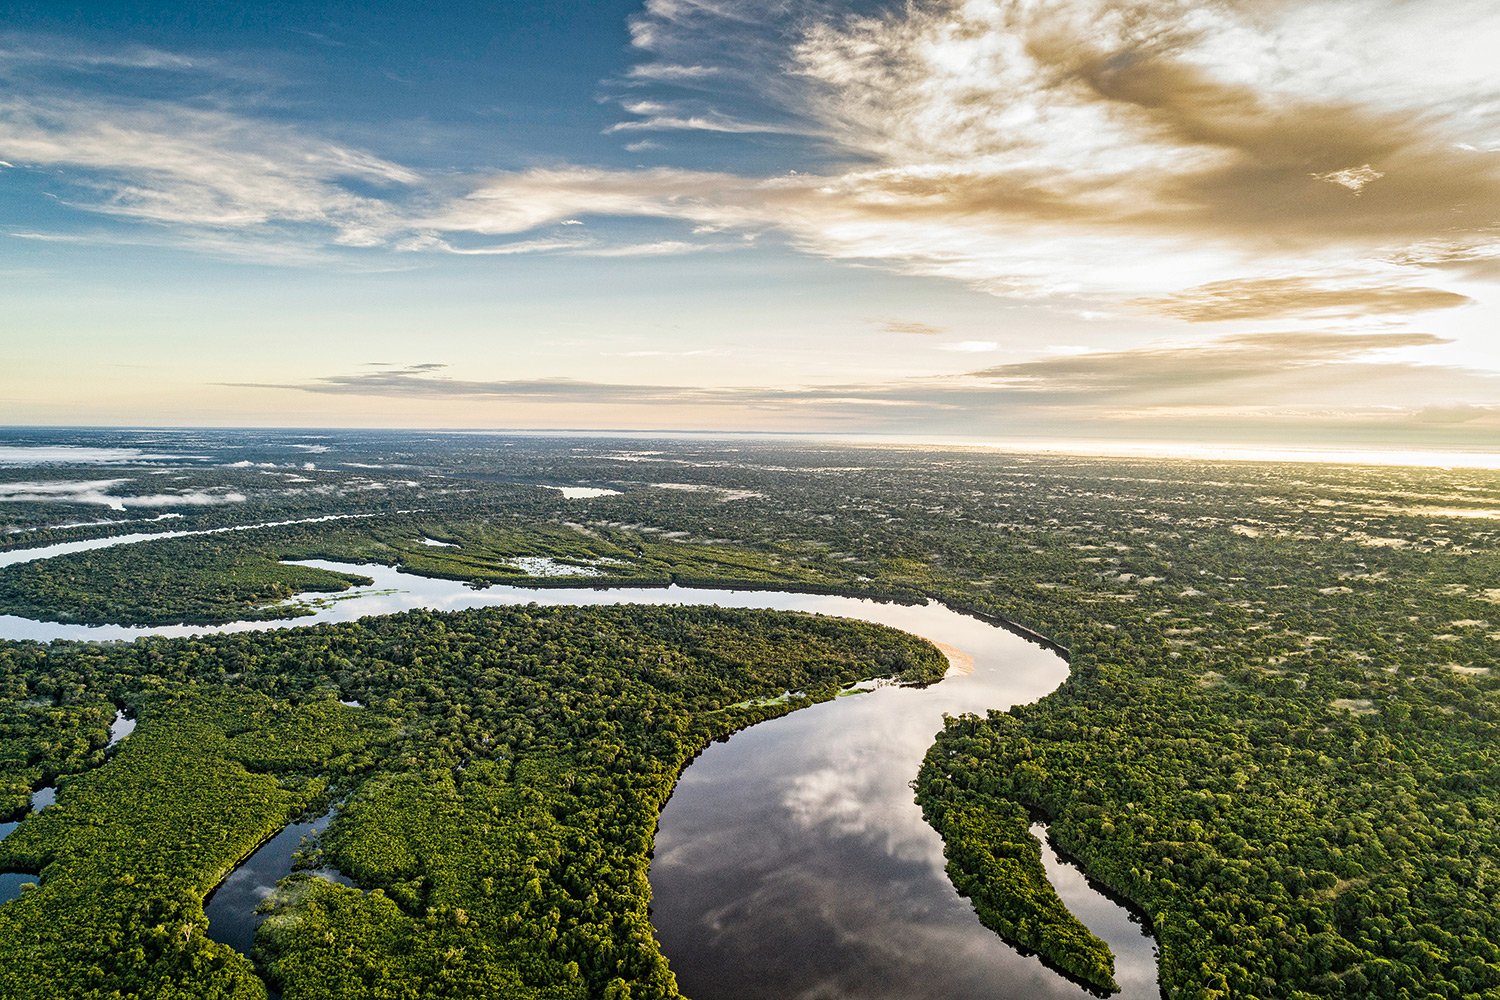 Para 97% dos entrevistados a preservação da Amazônia é essencial para a identidade nacional.